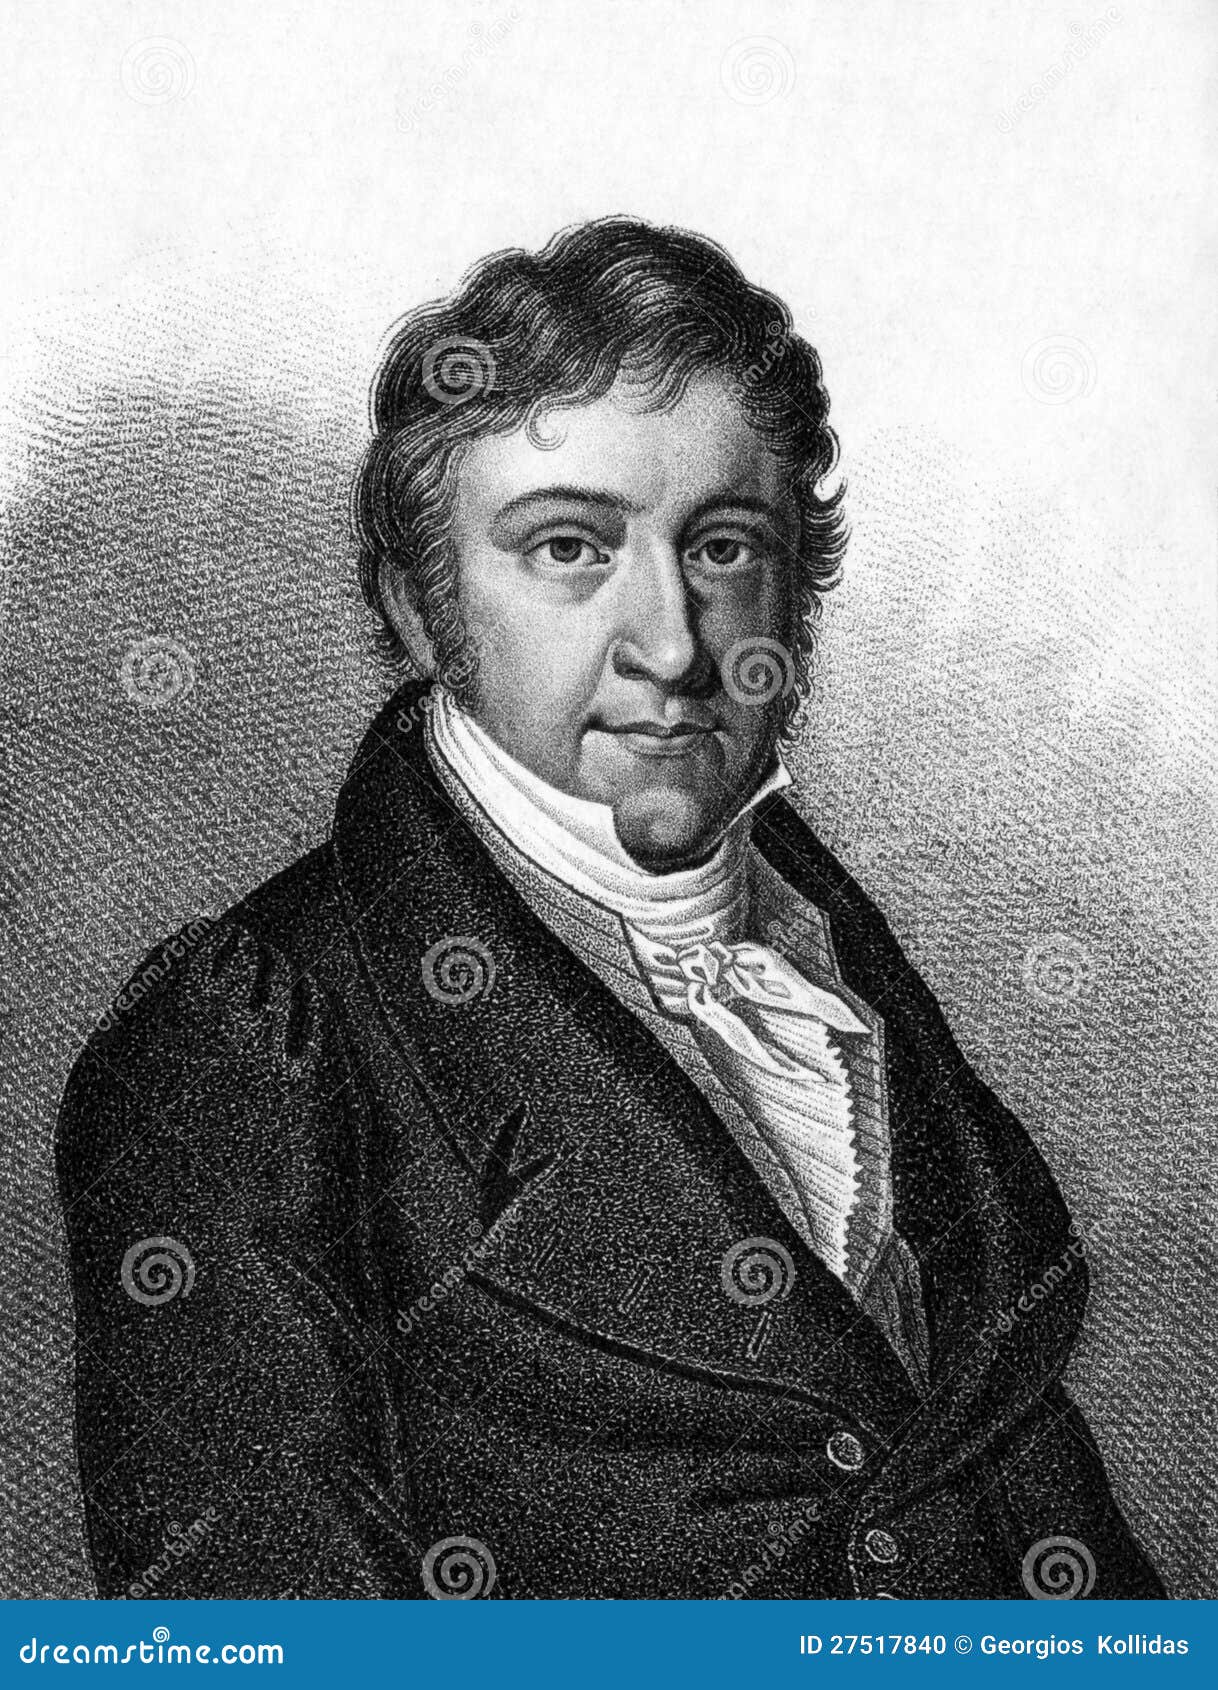 Johann Nepomuk Hummel (1778-1837) sur graver de 1859. Pianiste autrichien de compositeur et de virtuose. Gravé par l'artiste inconnu et édité dans Meyers Konversations-Lexikon, l'Allemagne, 1859.